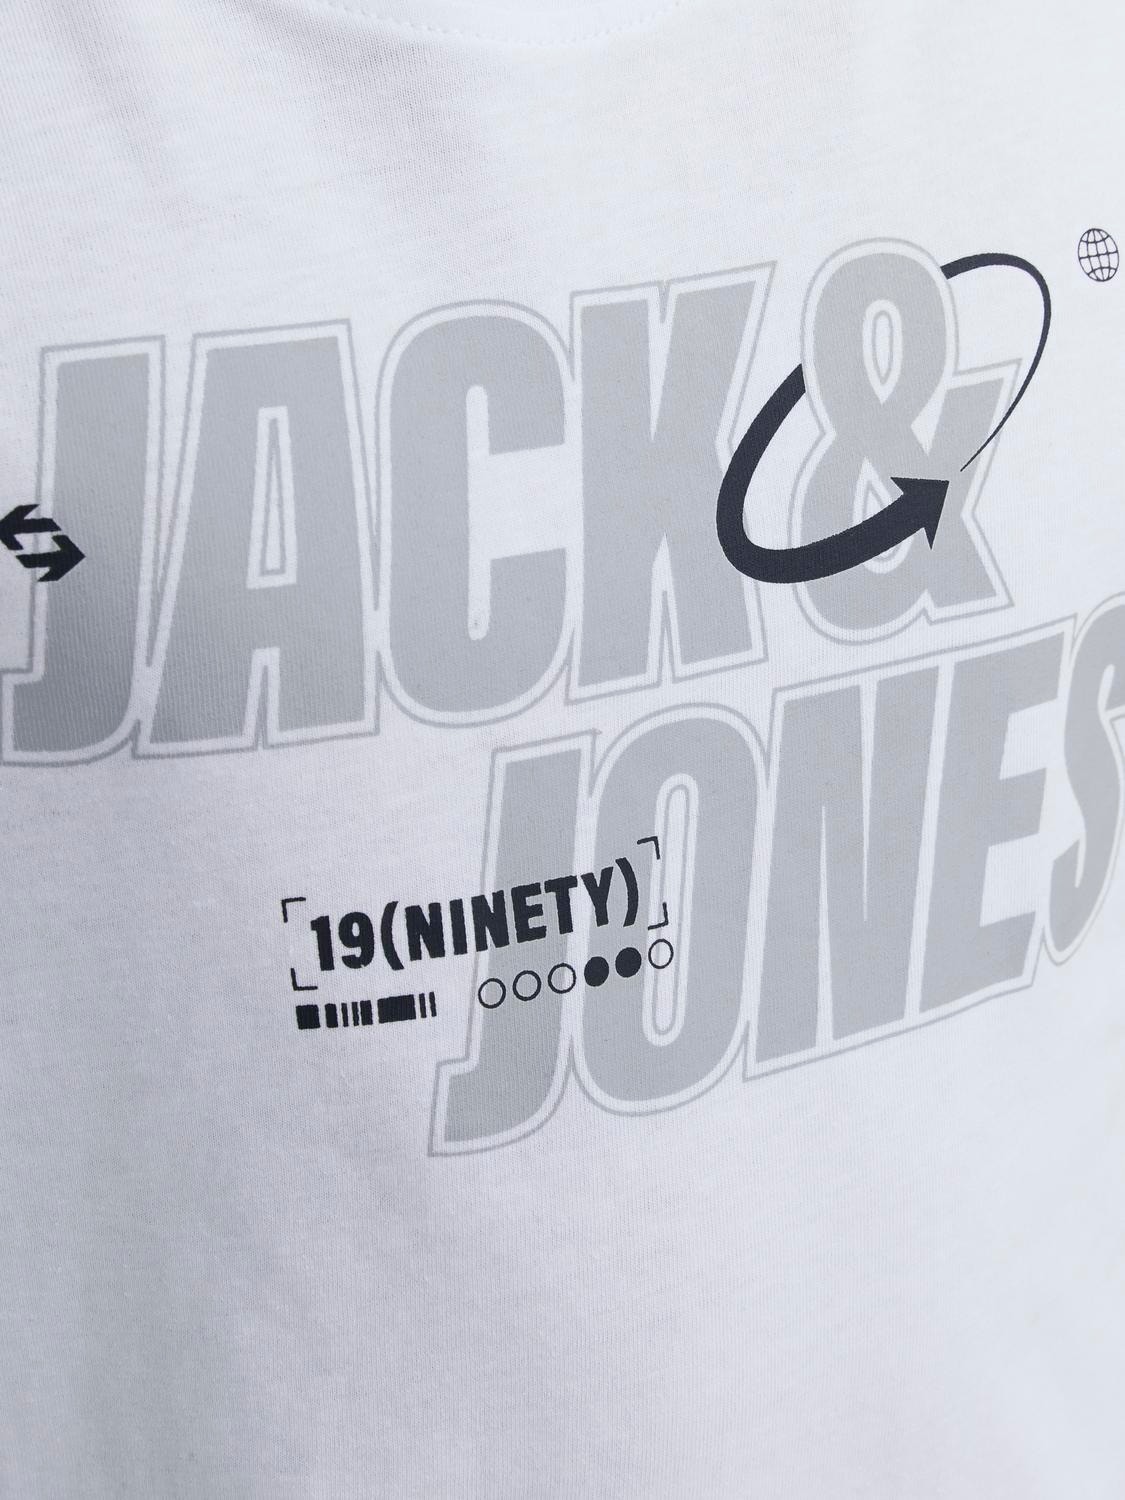 Jack & Jones Logo T-shirt For boys -White - 12247642